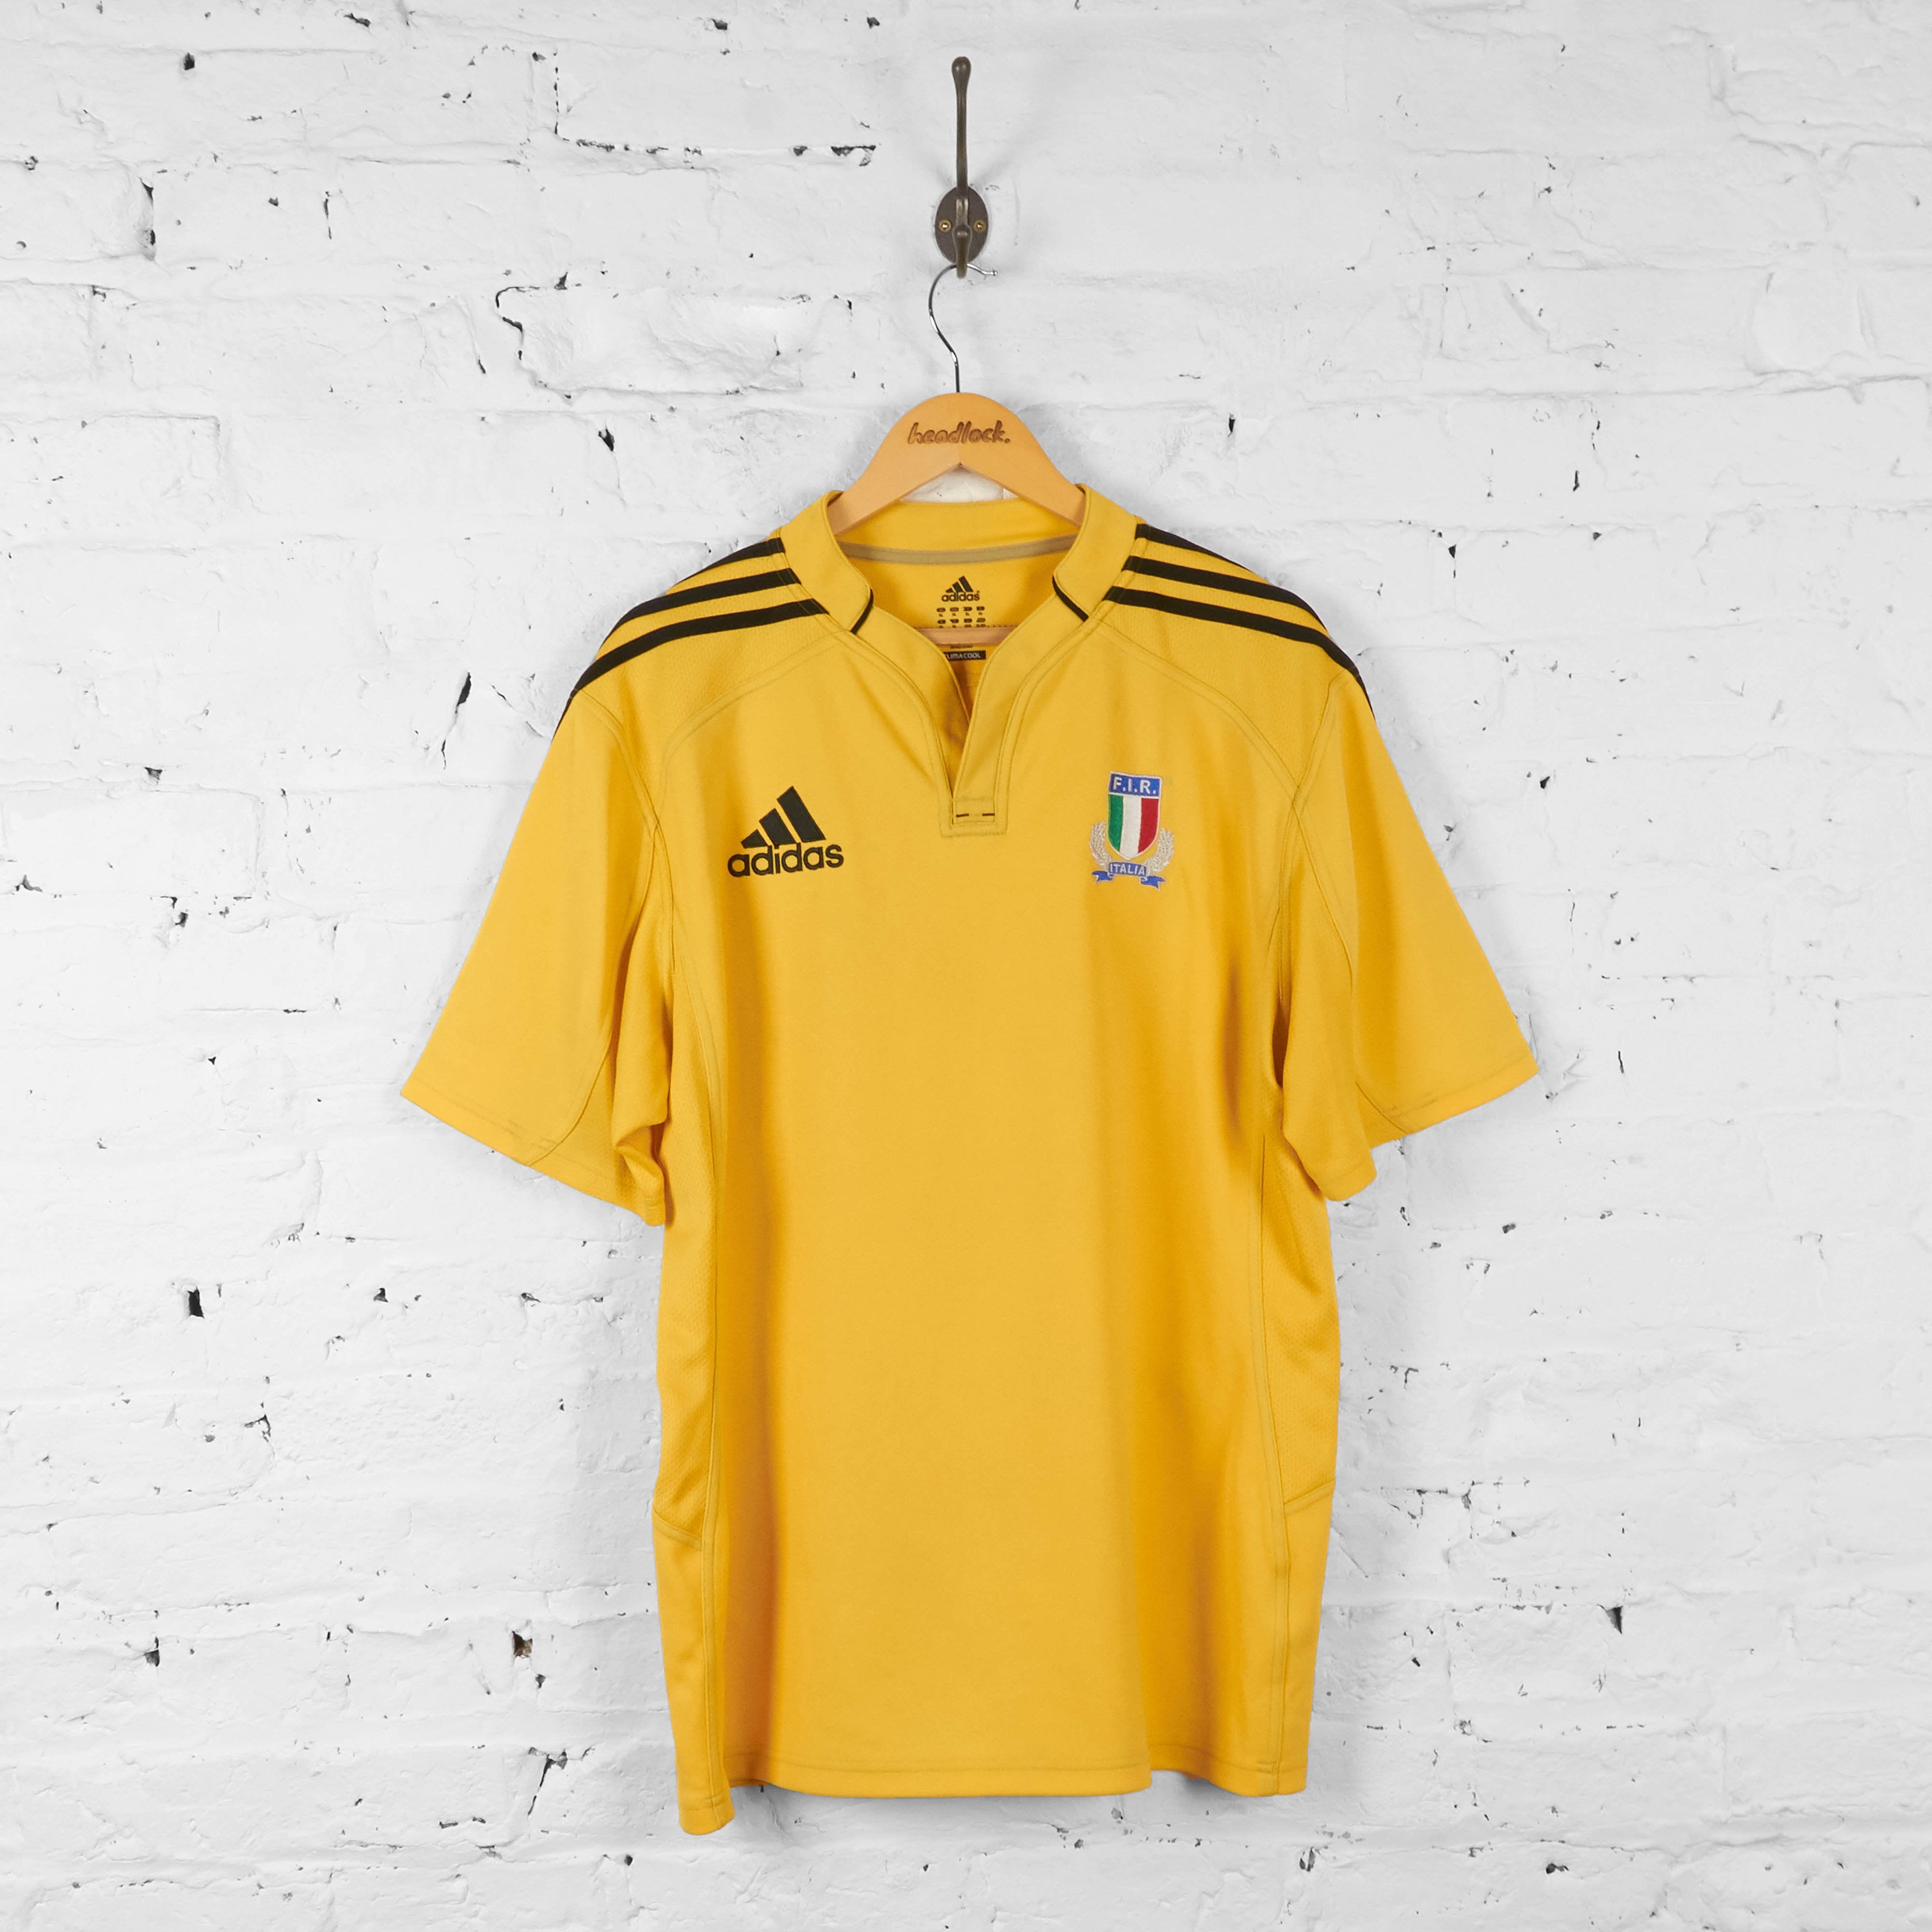 Schat toekomst Site lijn Italy Rugby Adidas Shirt - Yellow - XL – Headlock